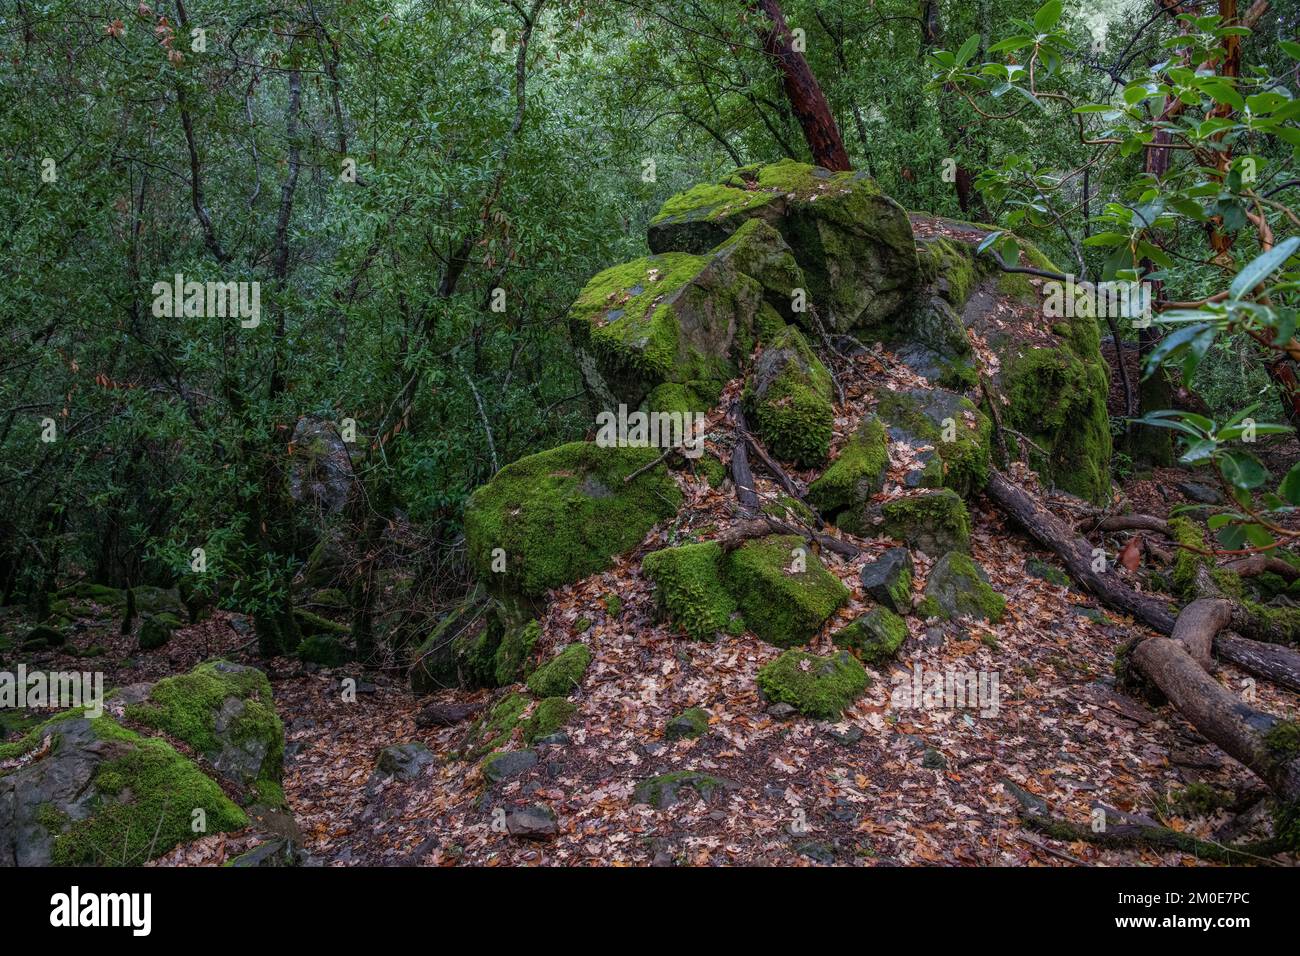 Une formation rocheuse couverte de mousse dans le parc national de Sugarloaf Ridge, en Californie, aux États-Unis. Banque D'Images